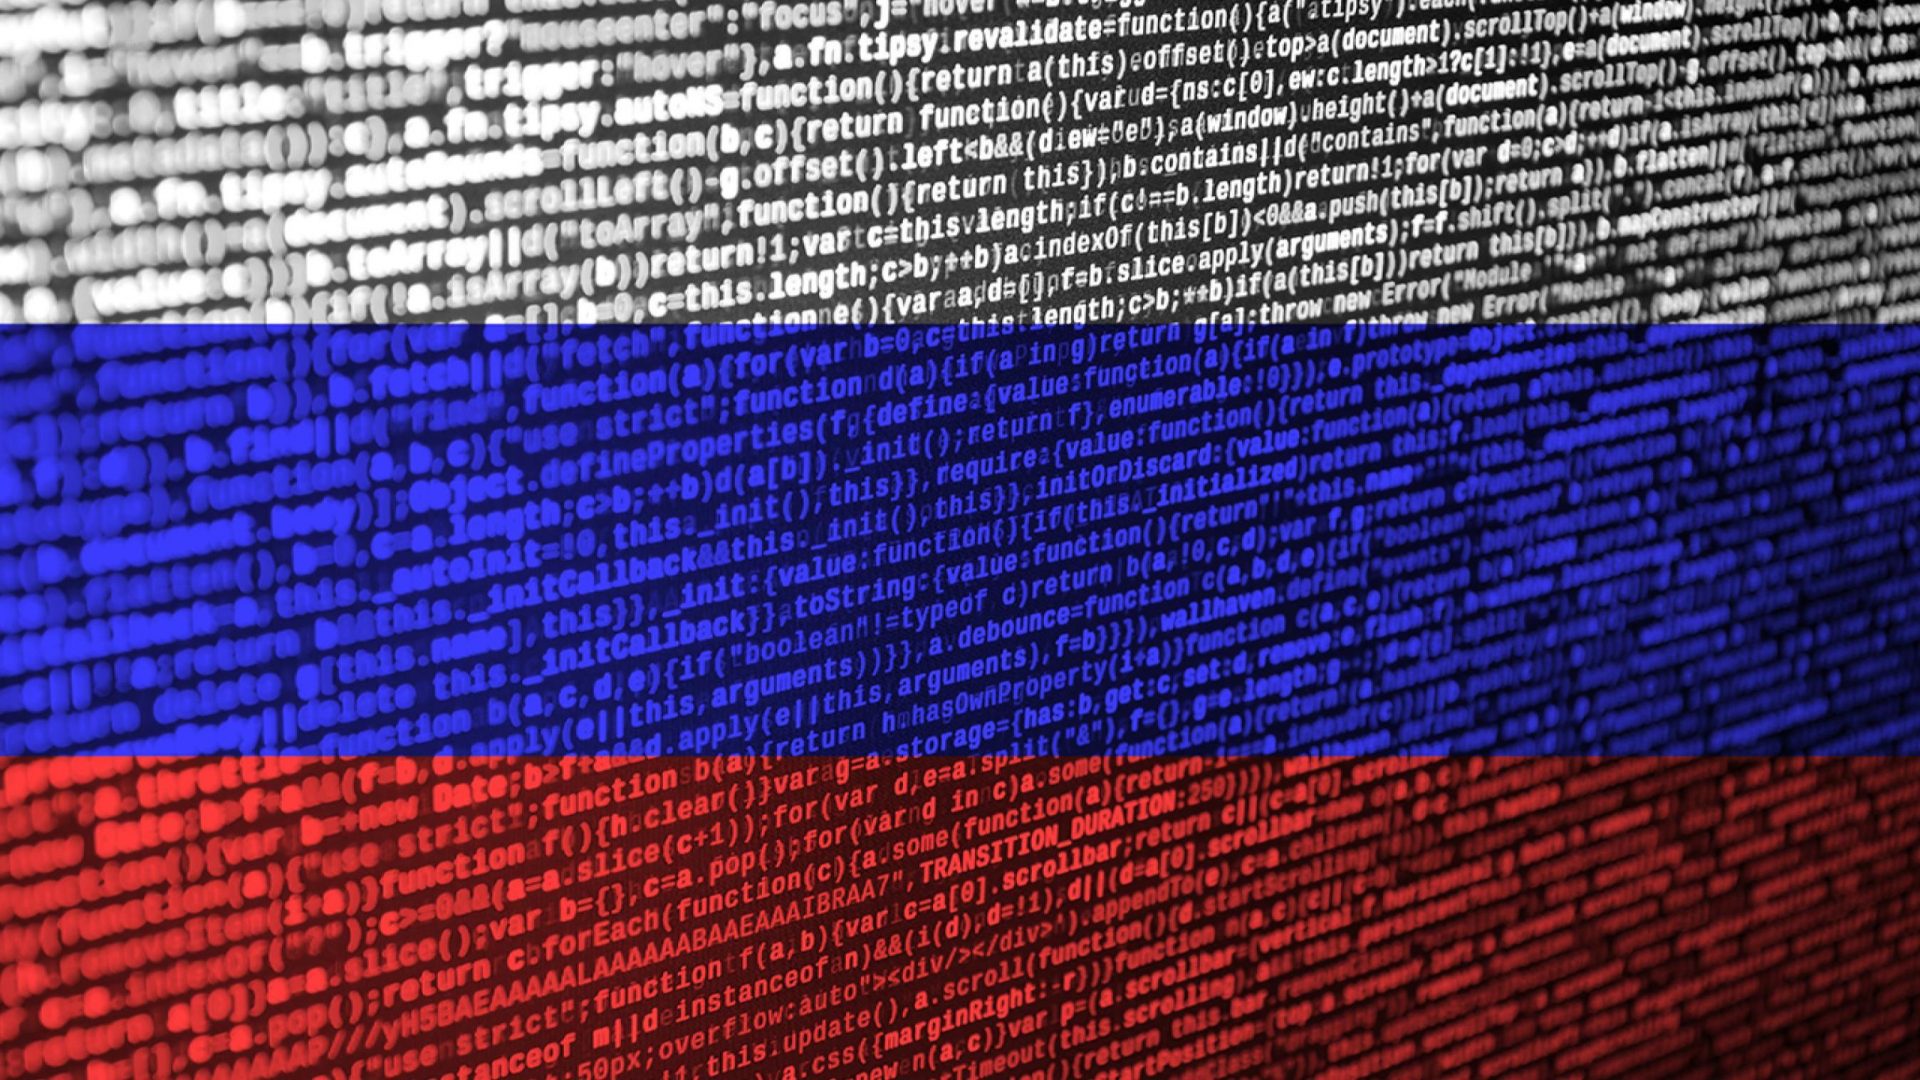 ”Secondary Infektion”. Interesele Rusiei ar fi fost promovate prin campanii de dezinformare de pe Reddit și Facebook